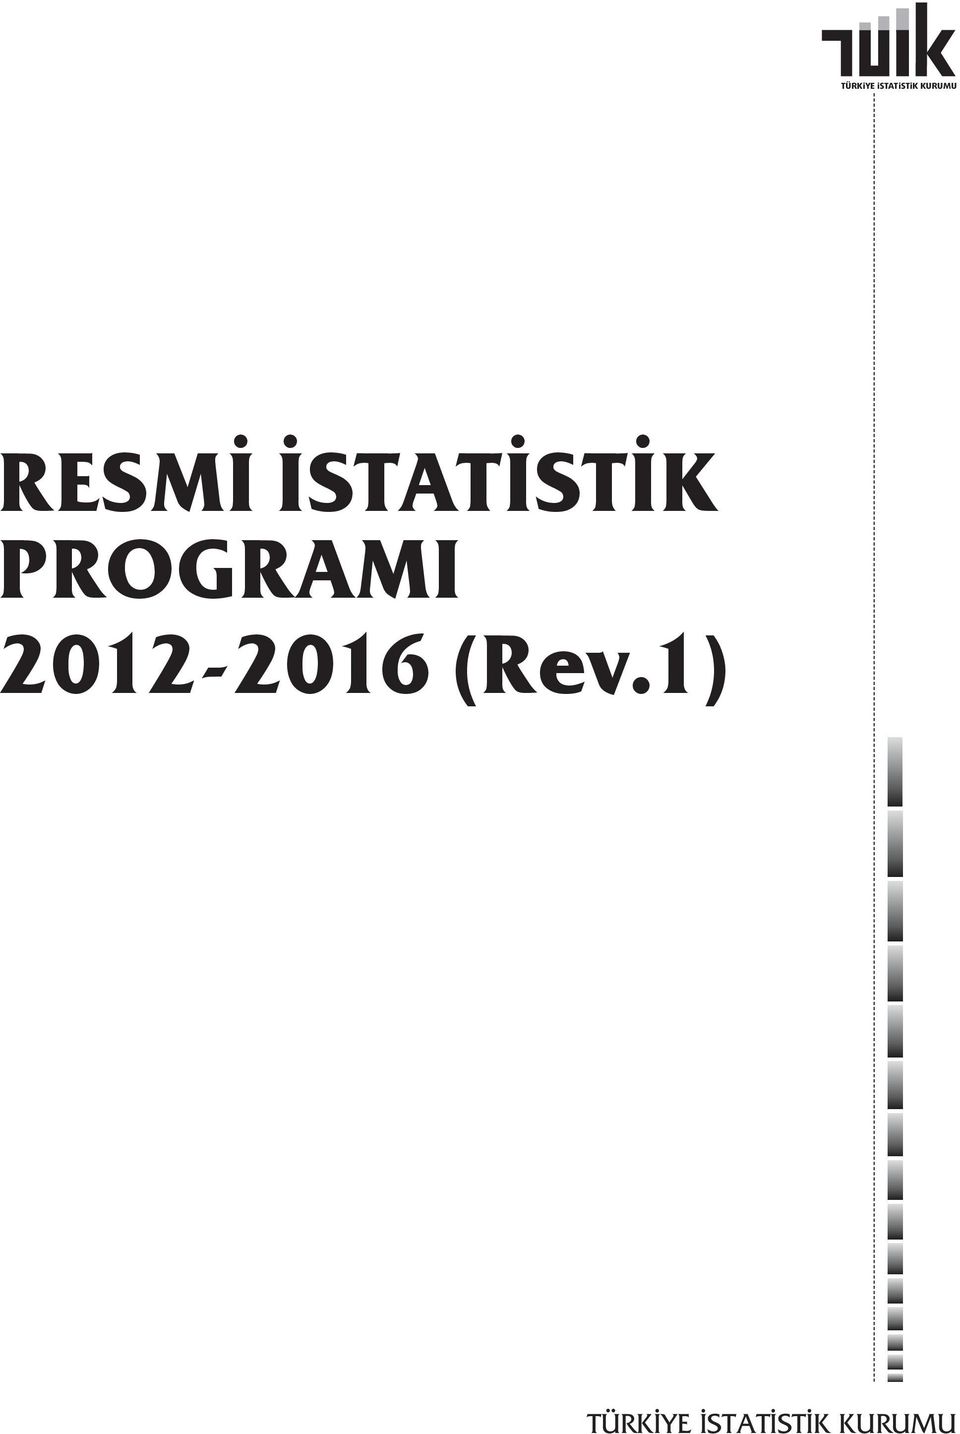 PROGRAMI 2012-2016 (Rev.